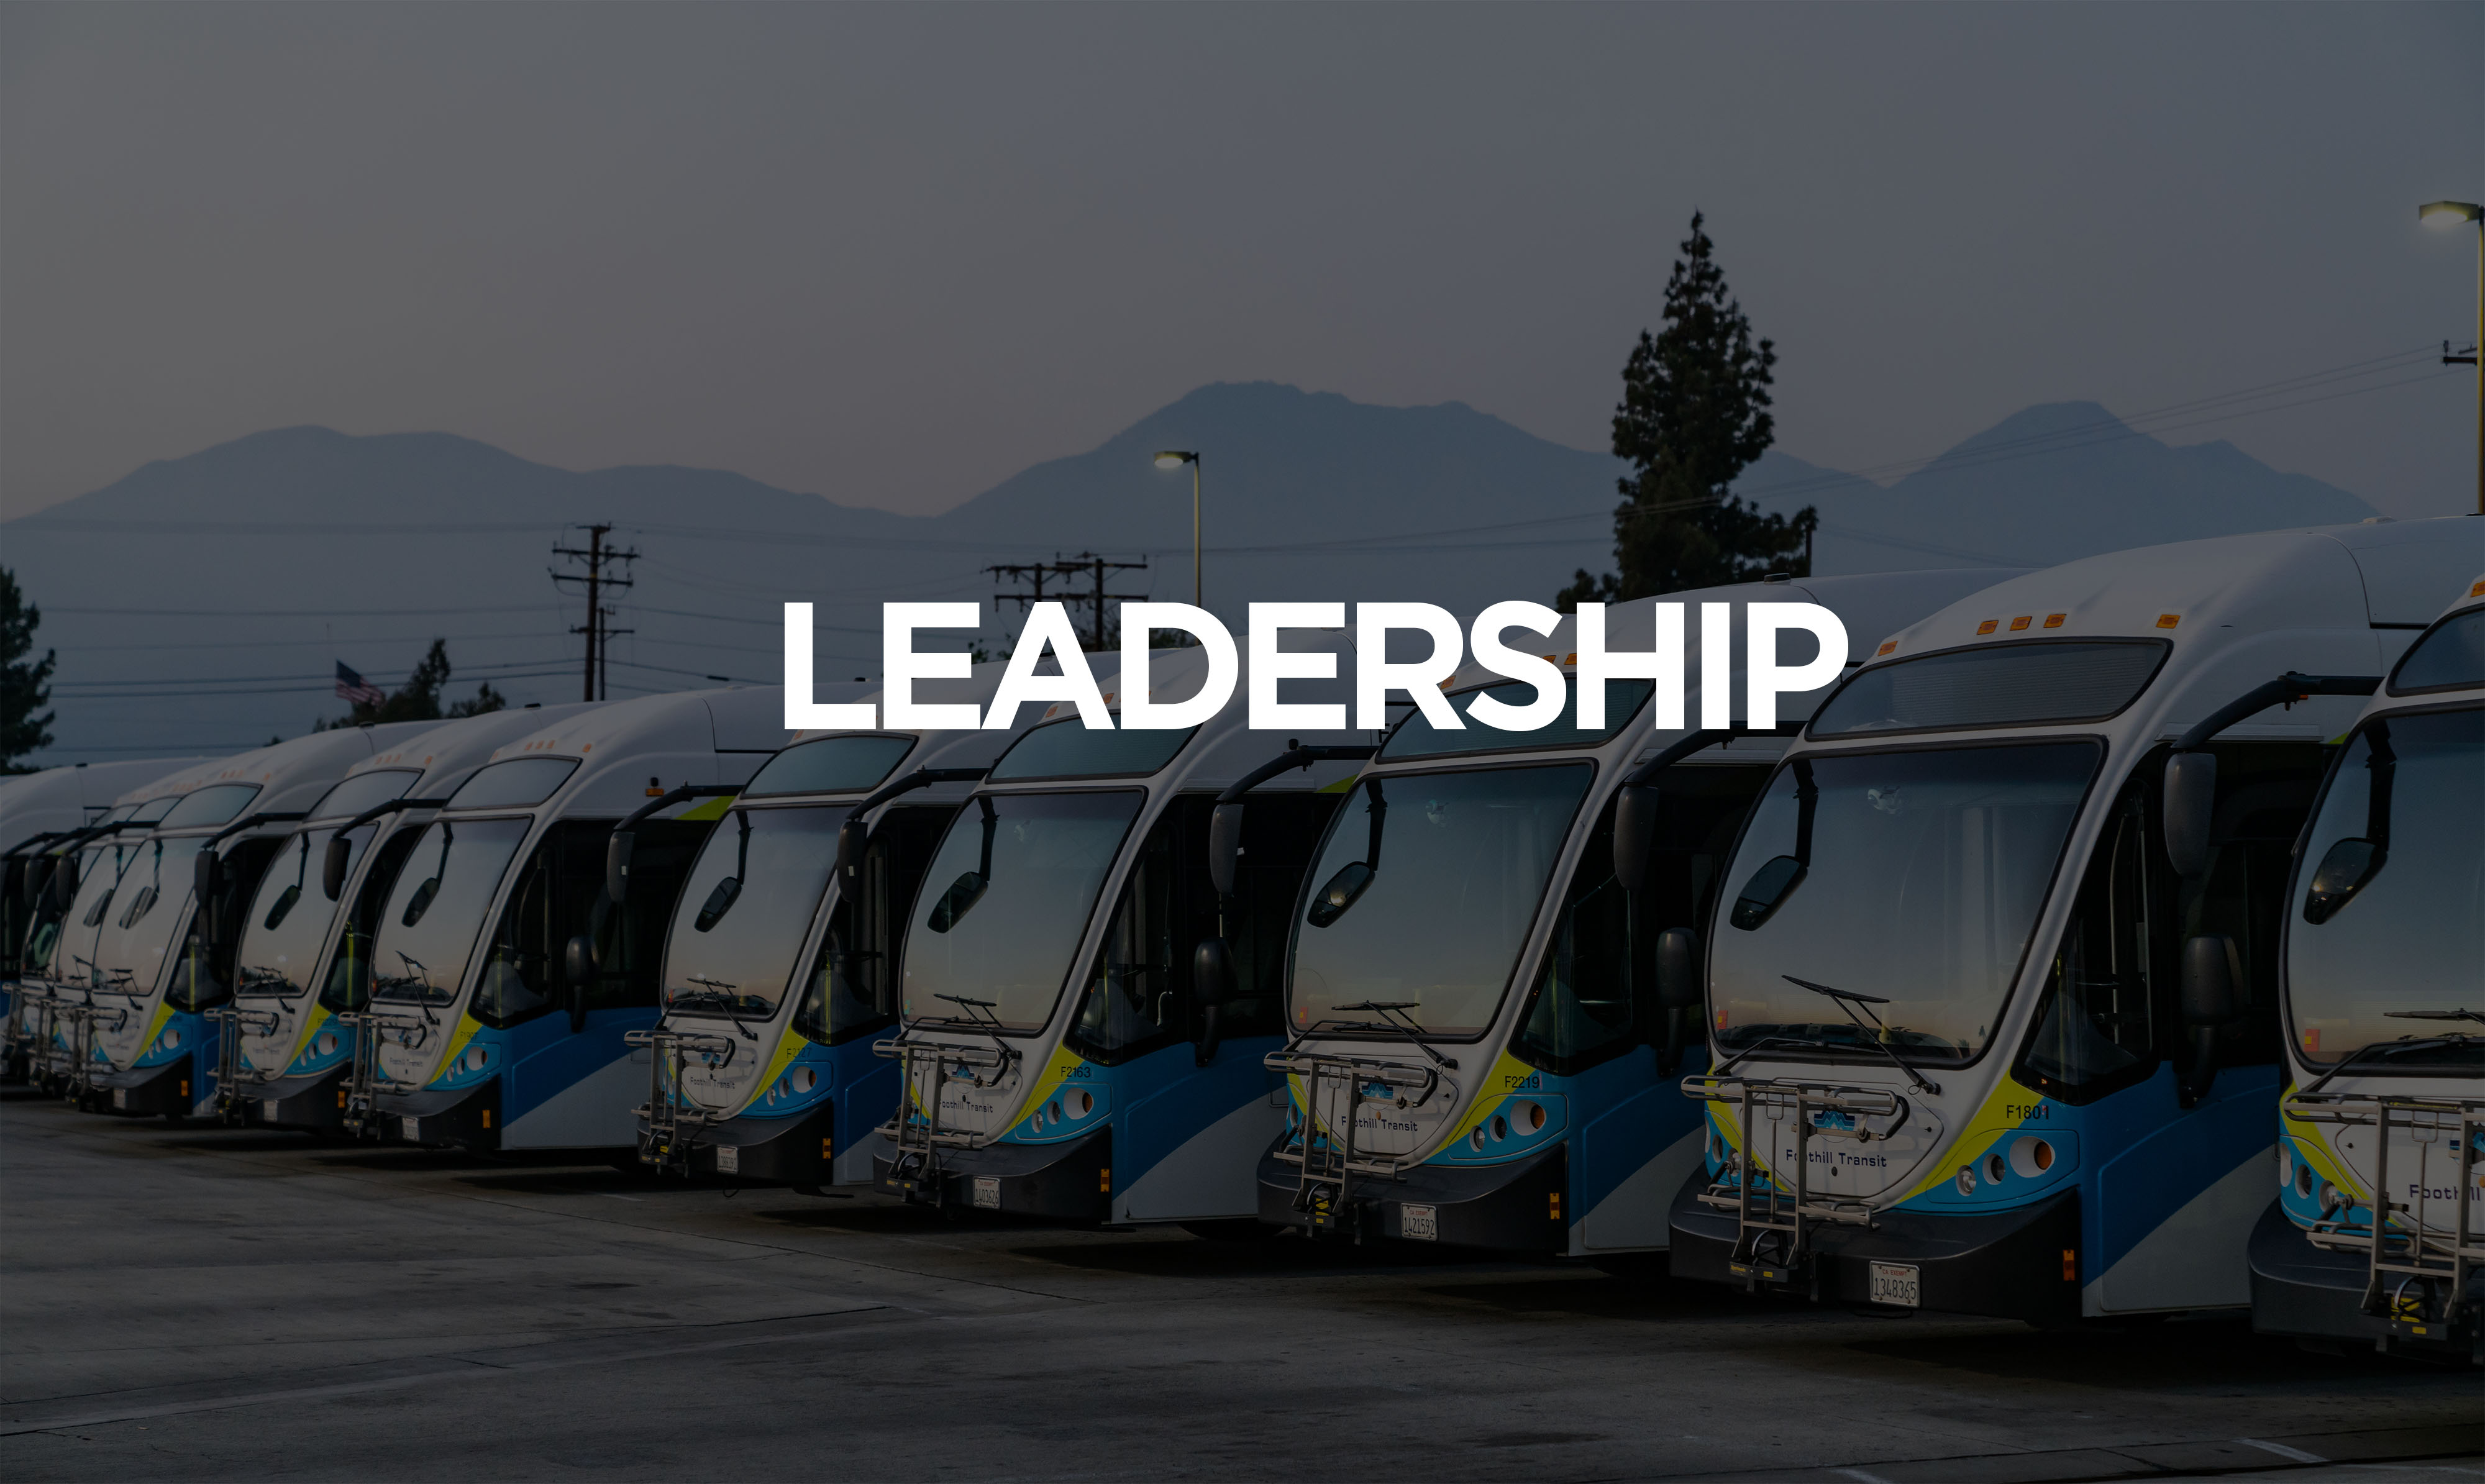 รถเมล์ 10 คันจอดเรียงแถวแสดงความเป็นผู้นำ